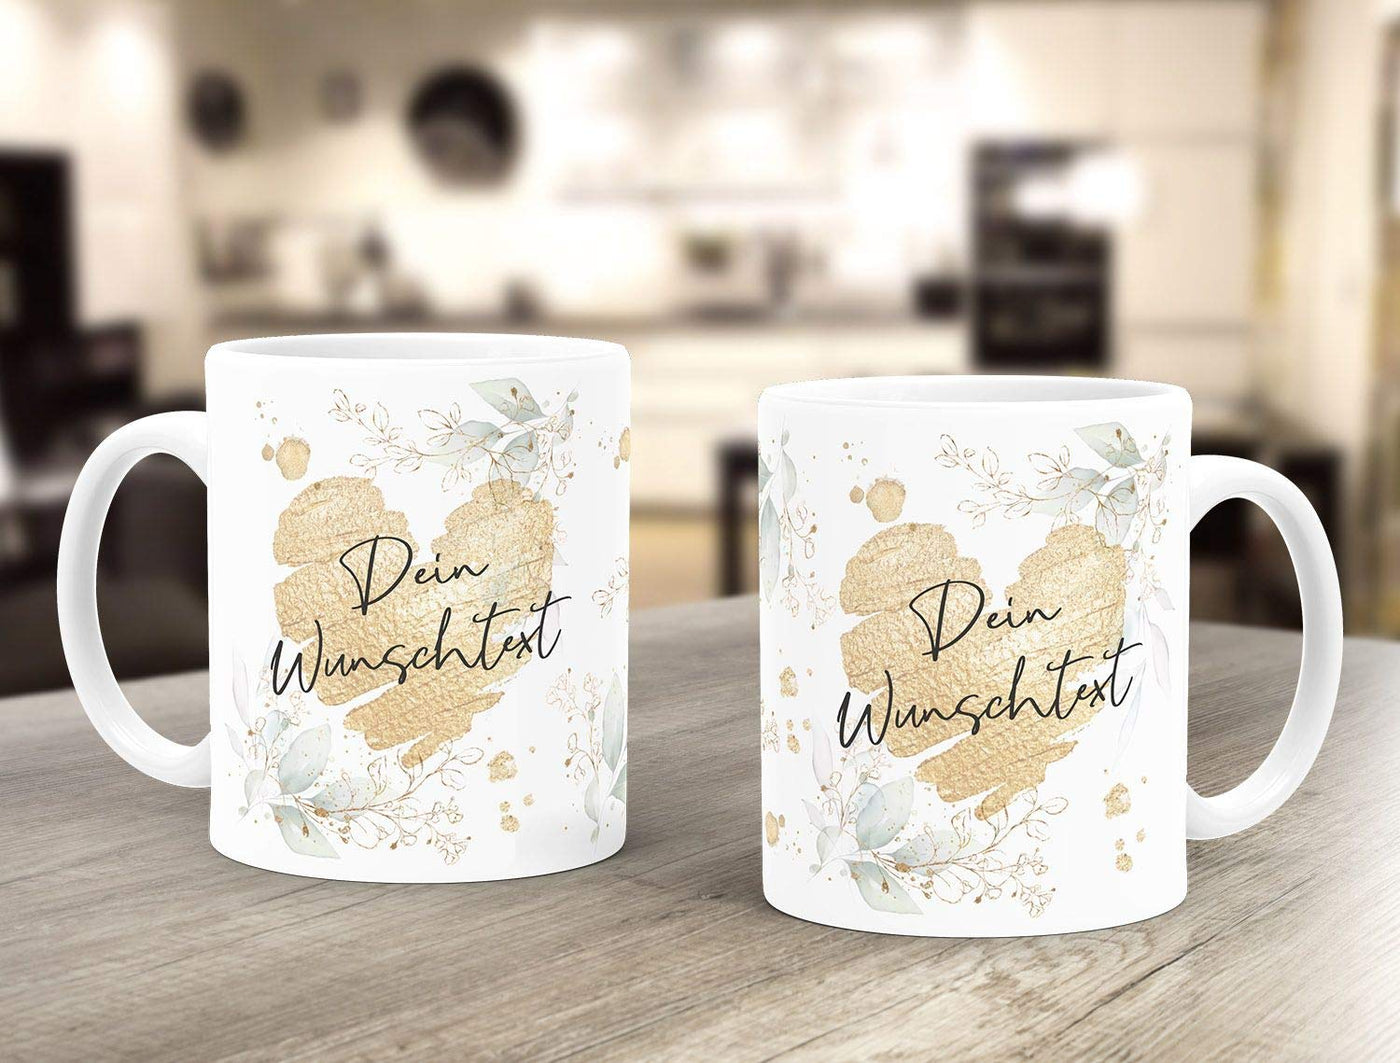 SpecialMe® Kaffee-Tasse [Wunschtext] mit Herz - soziale Berufe, Familie, Freunde kleines Dankeschön Geschenk Danke sagen Personalisiert weiß Keramik-Tasse